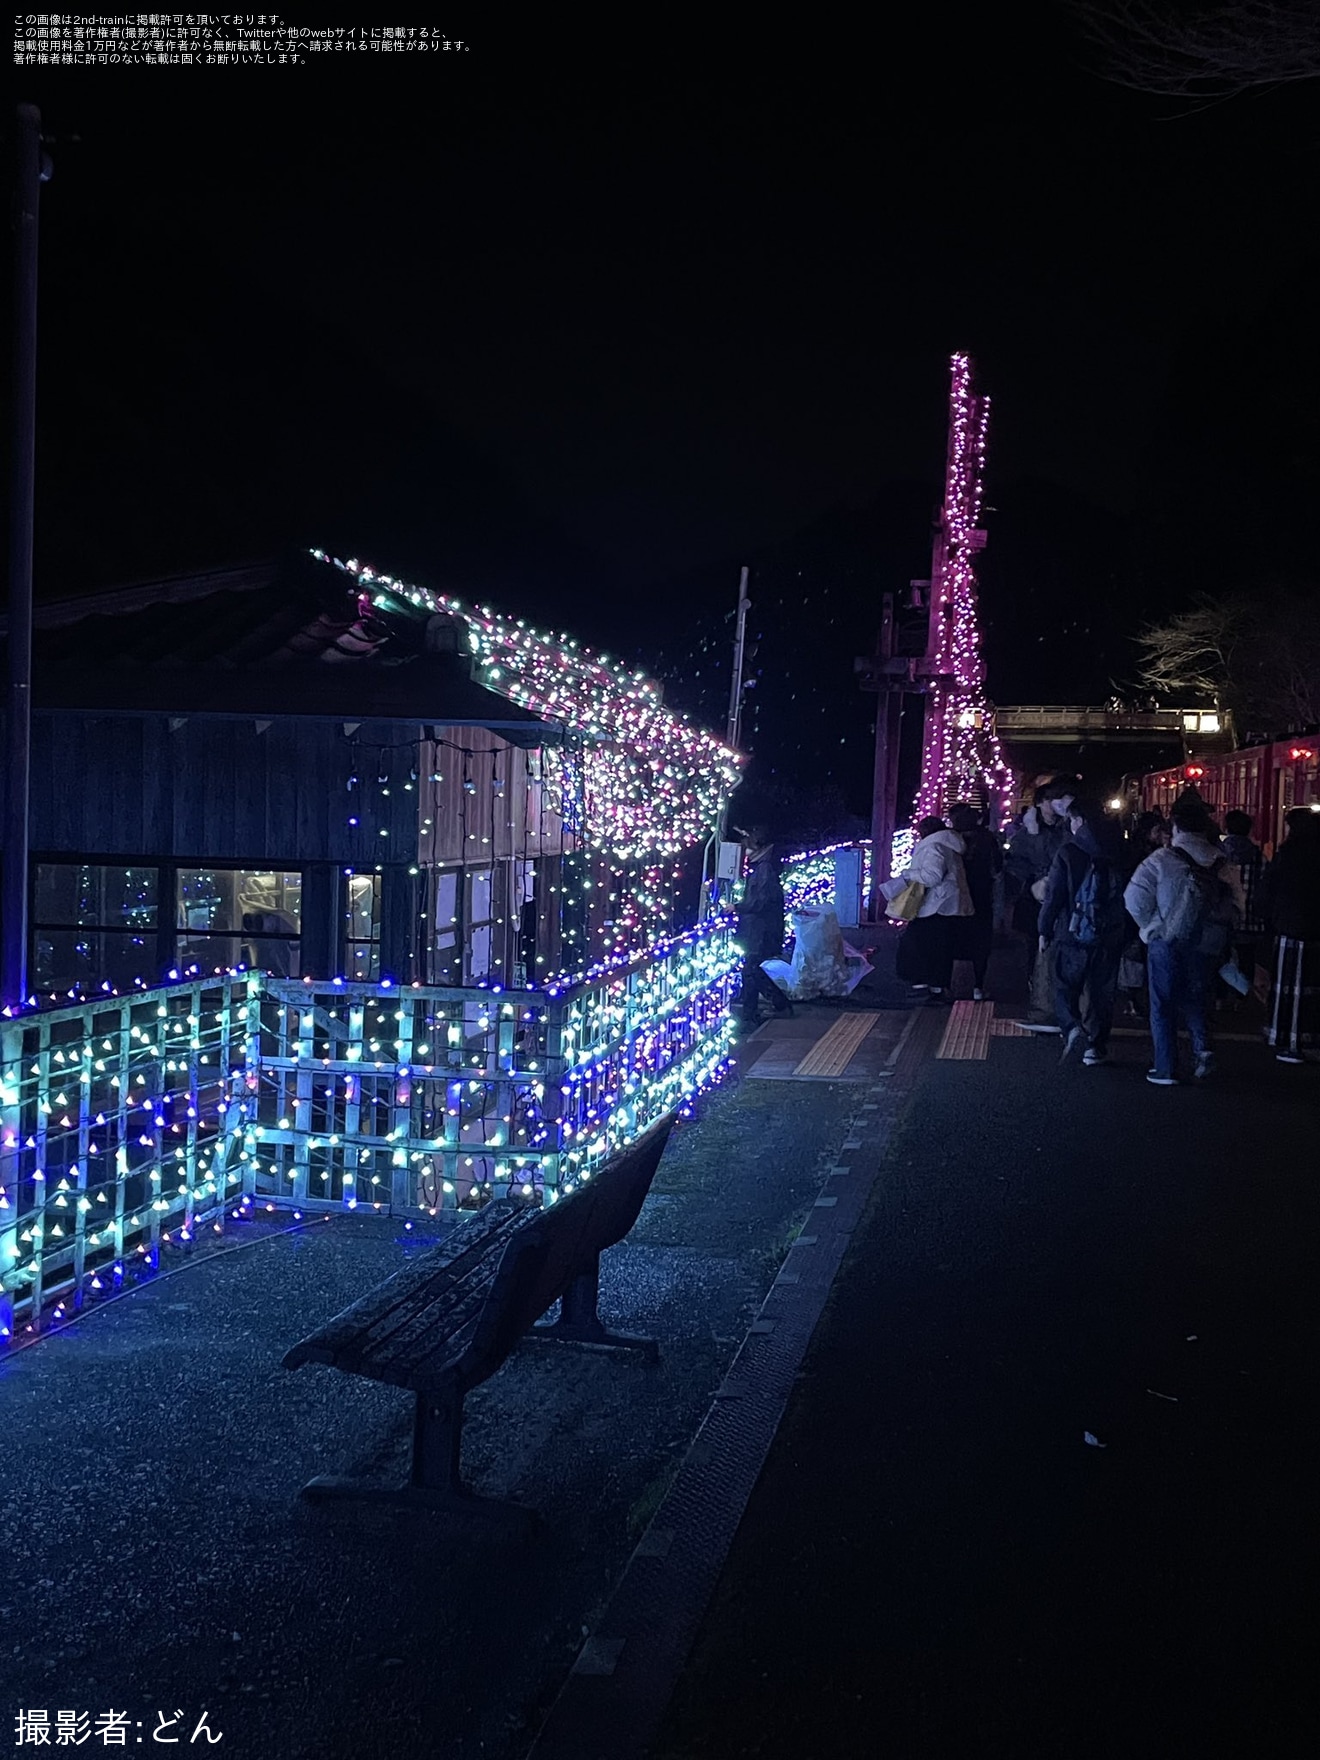 【嵯峨野】「クリスマスロマンティックトレイン」を特別ダイヤで運行の拡大写真